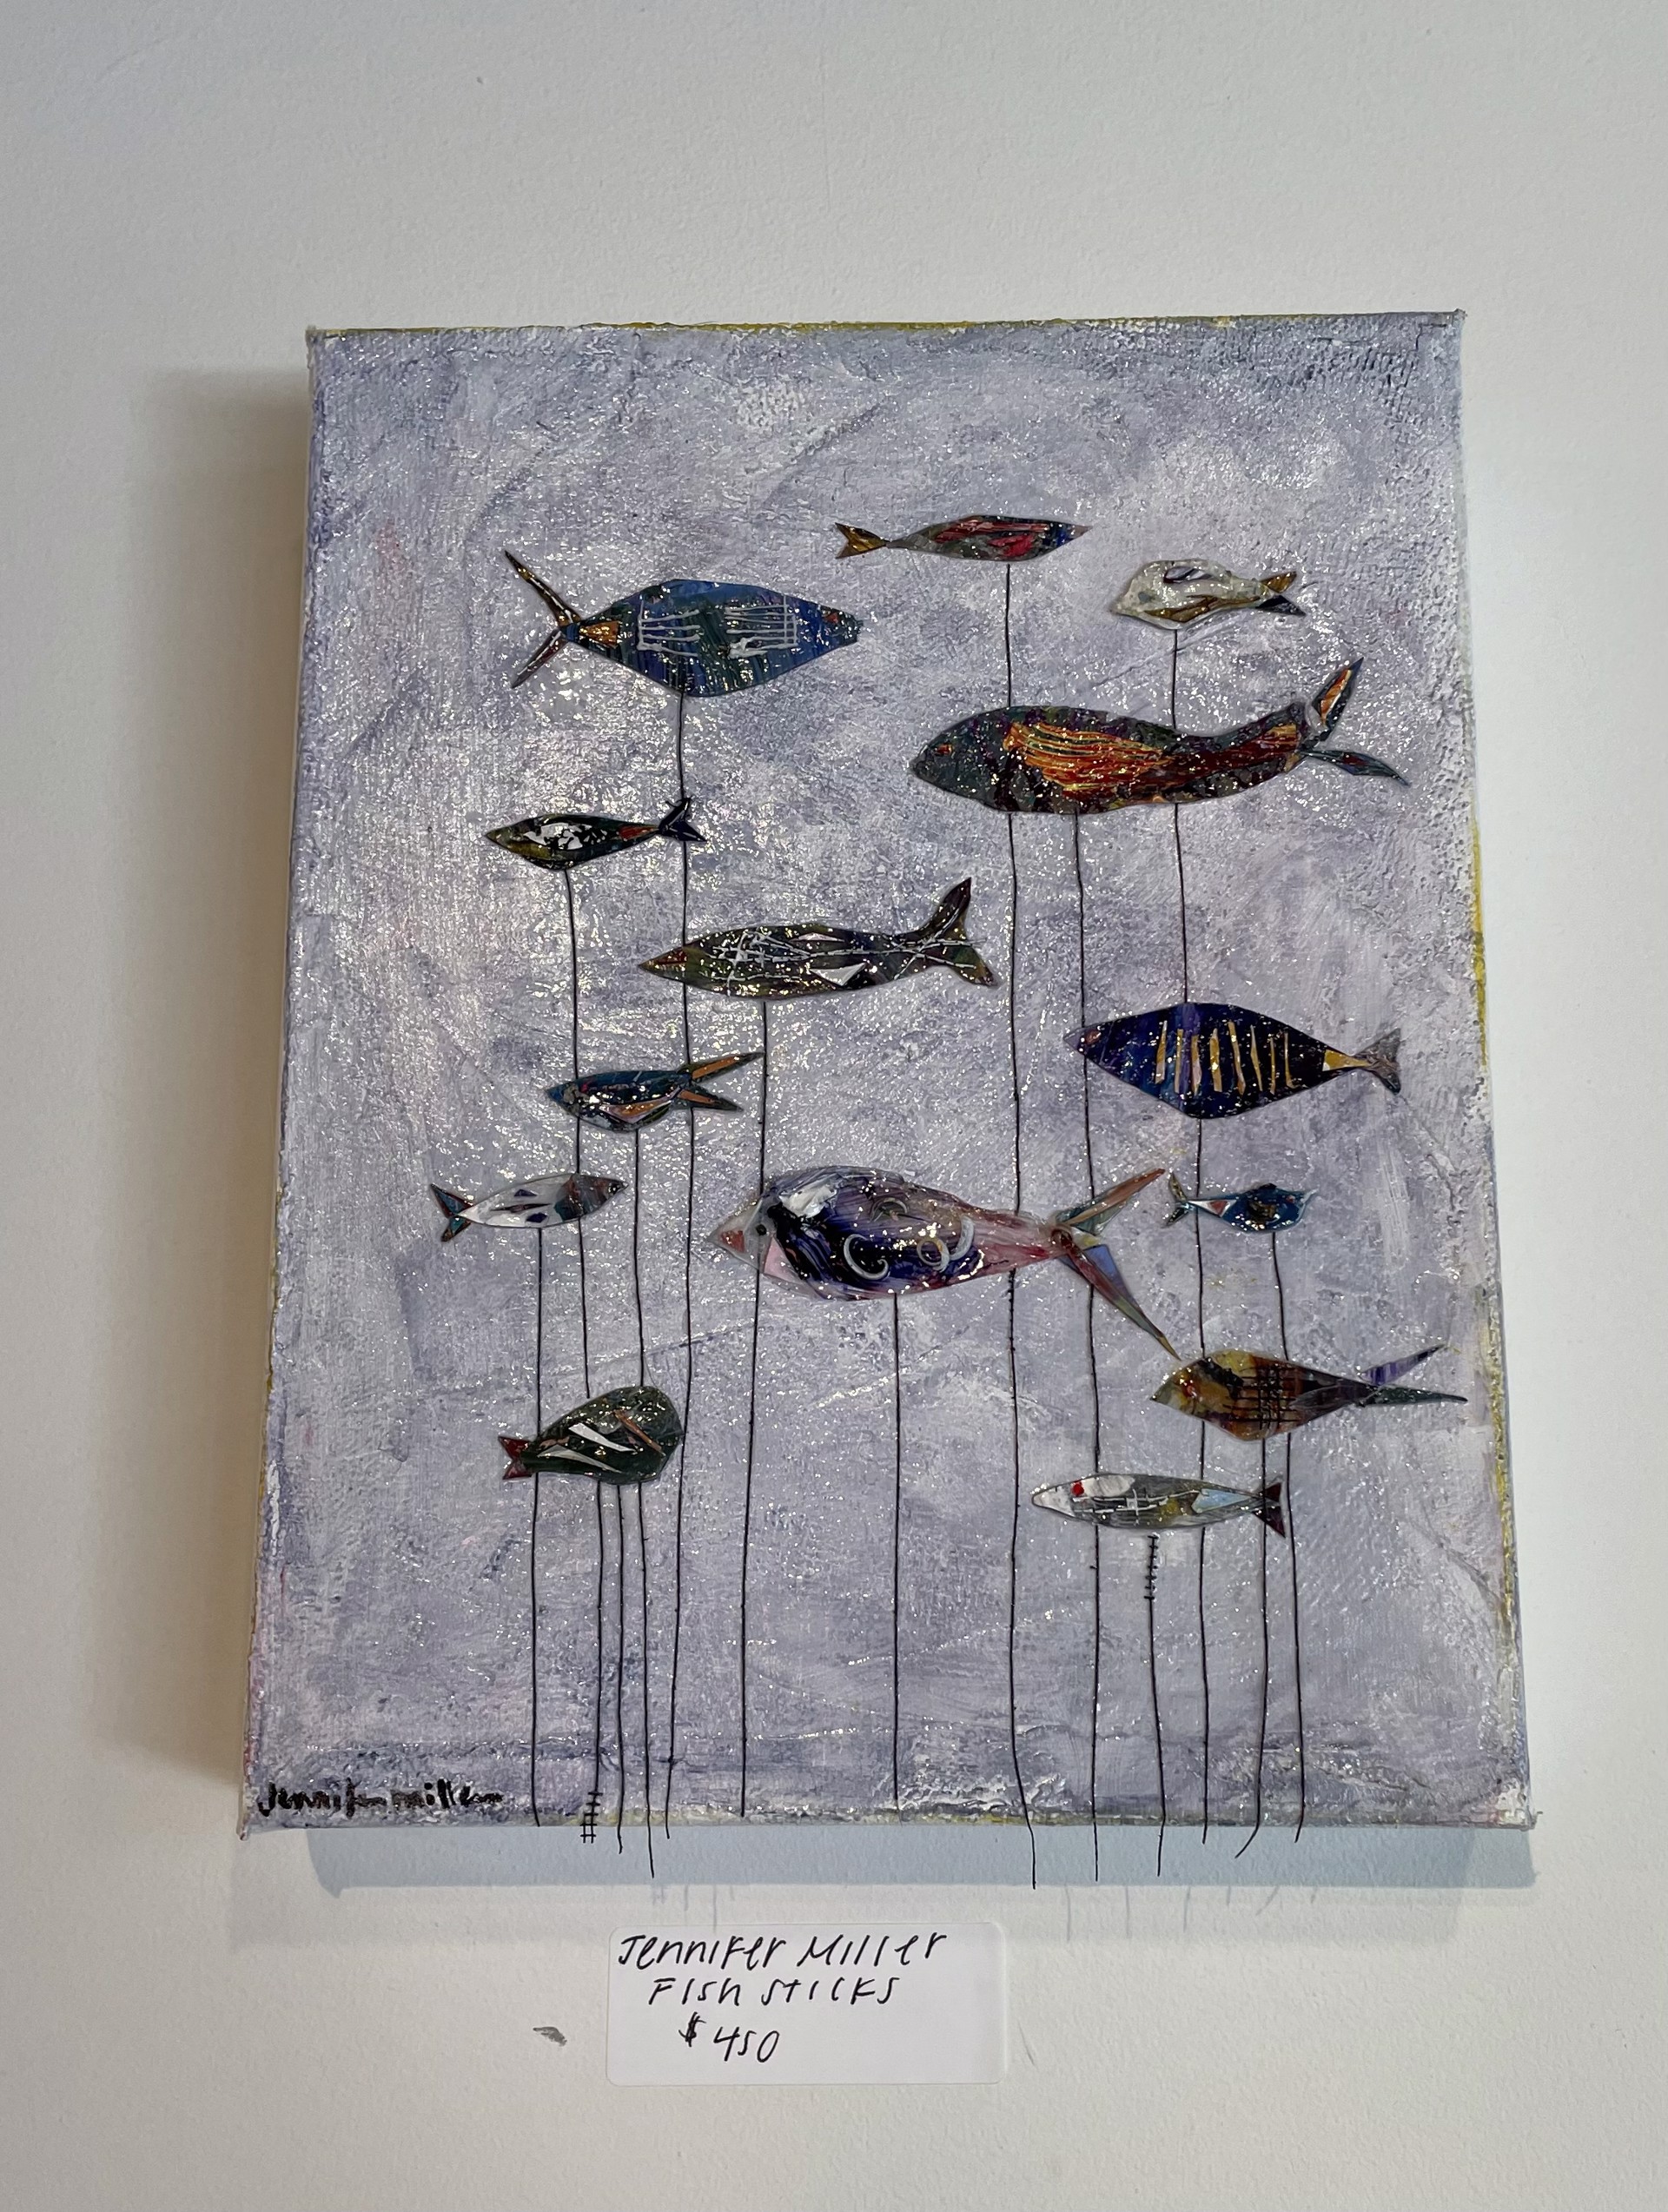 Fish Sticks by Jennifer Miller